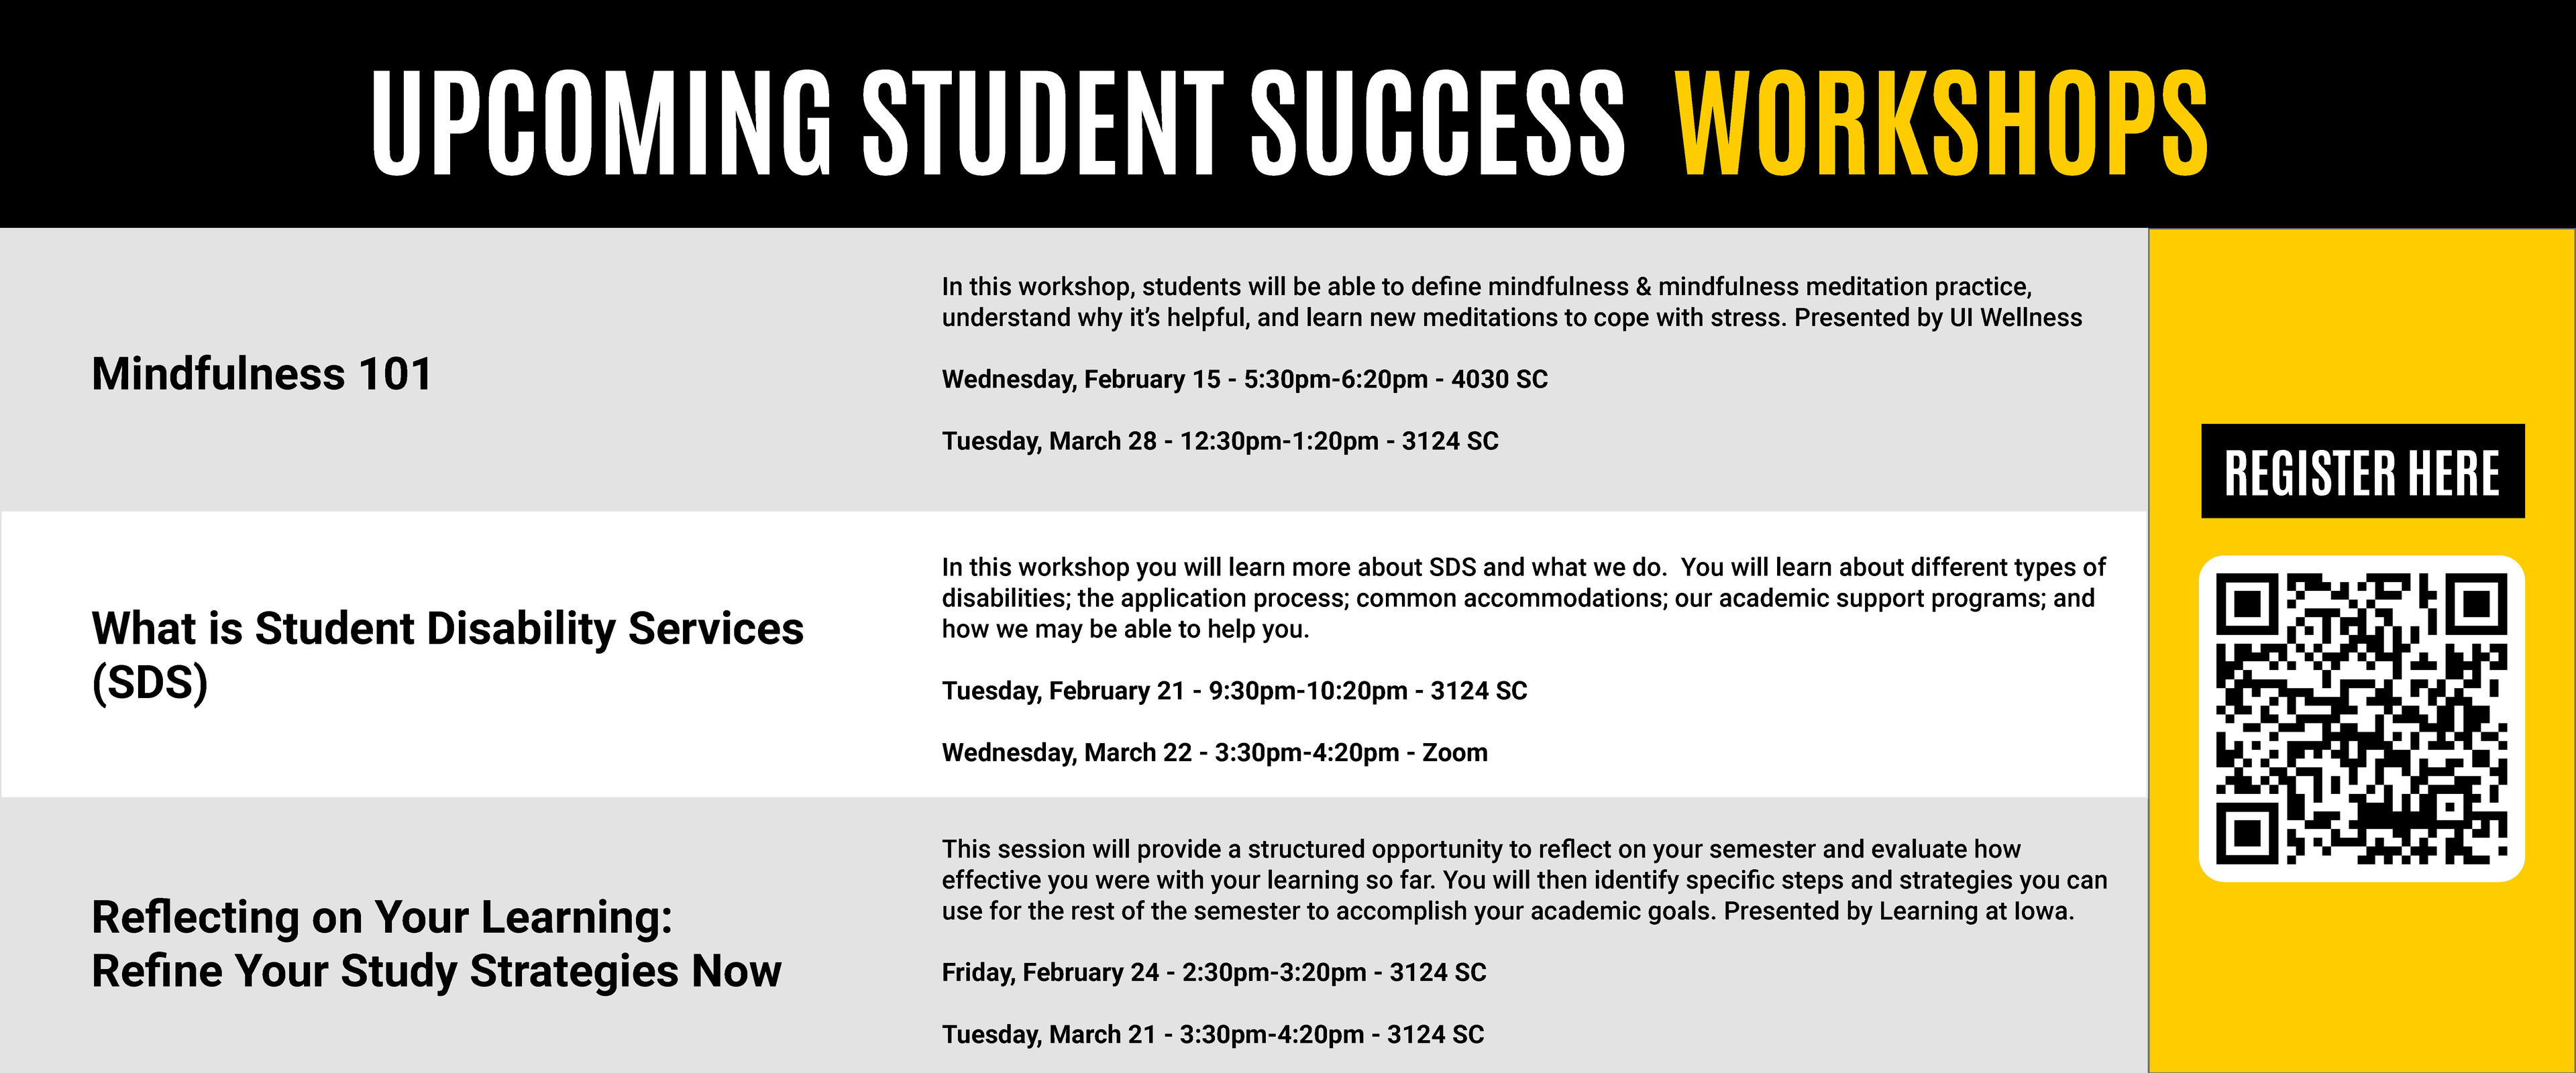 SP23 Student Success Workshops Schedule Part 3